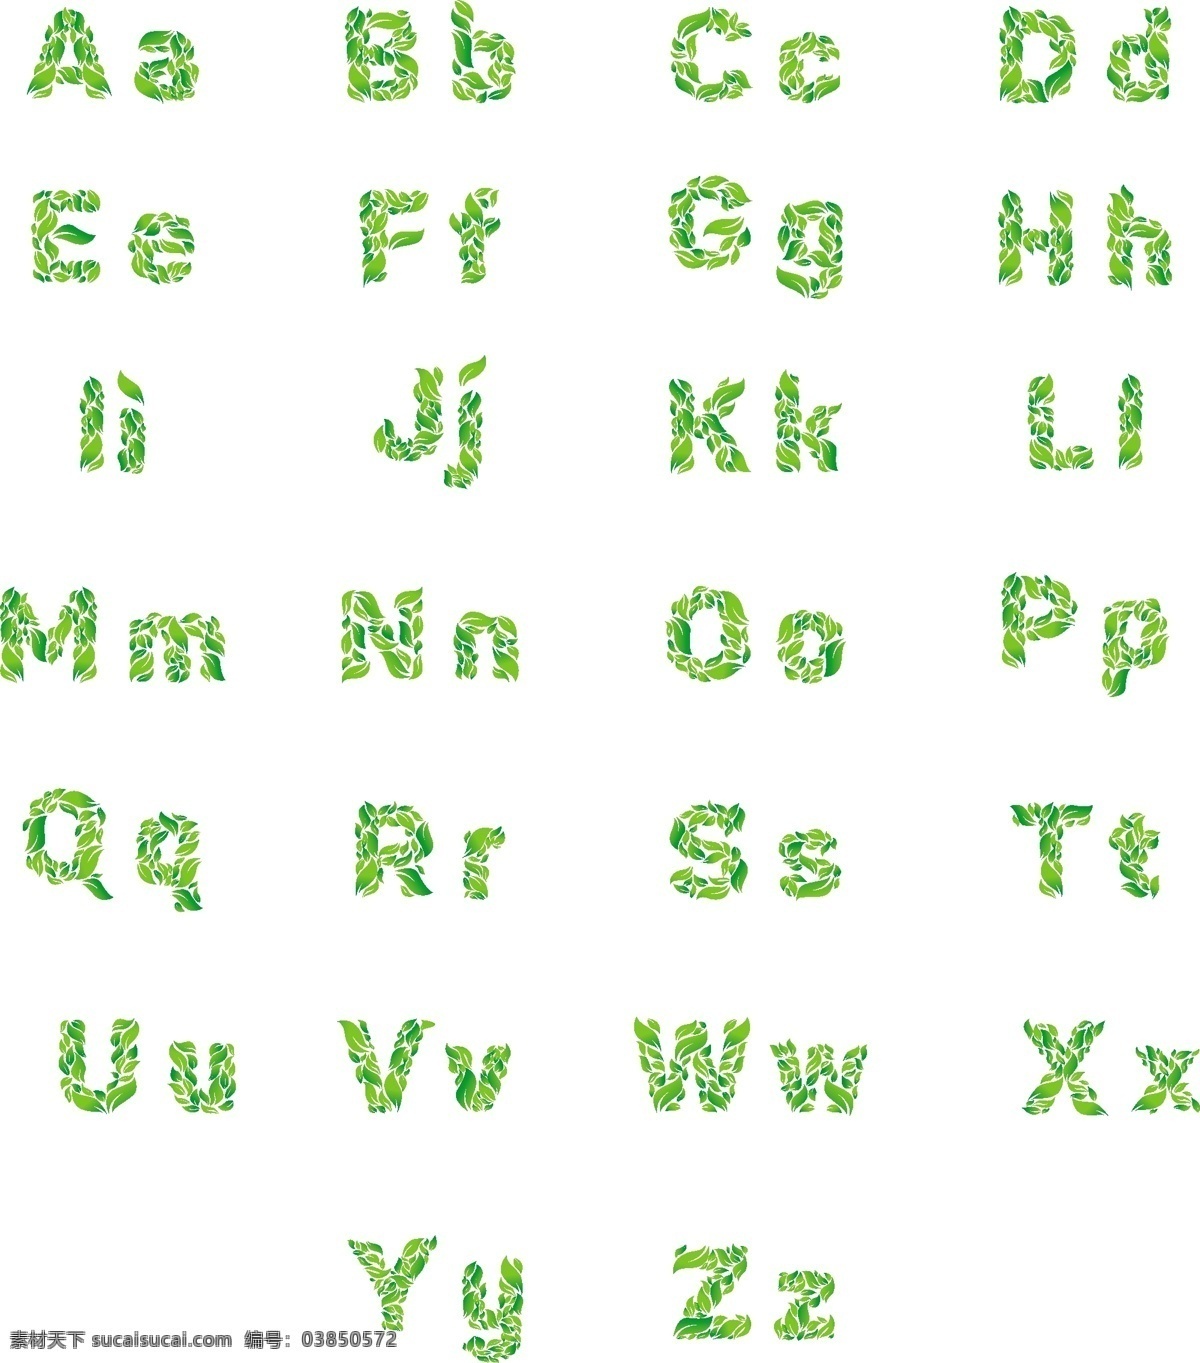 绿叶 卡通 字母表 抽象创意字母 个性字母 个性数字 字体设计 立体字母 花纹字母 英文字体 绿叶字母 logo字母 字母logo 抽象字母 抽象英文 艺术字 拼音字母 字母设计 艺术字母 创意字母 时尚字母 设计字母 拼图字母 英文字母 艺术英文字母 周年庆 异形数字 手绘数字 生日数字 现代化 logo